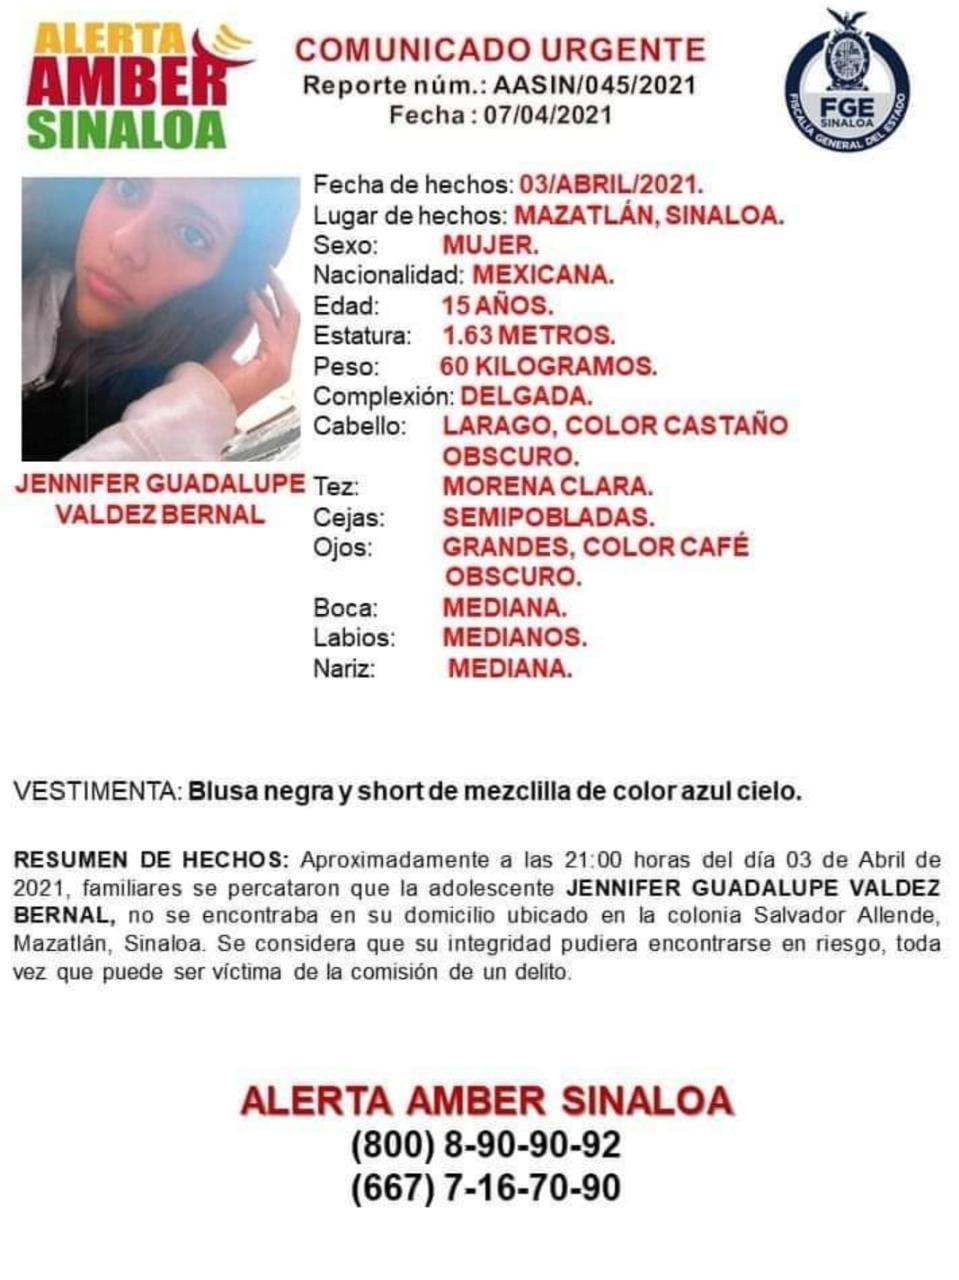 $!En Mazatlán hay más de 20 mujeres desaparecidas, señala colectivo